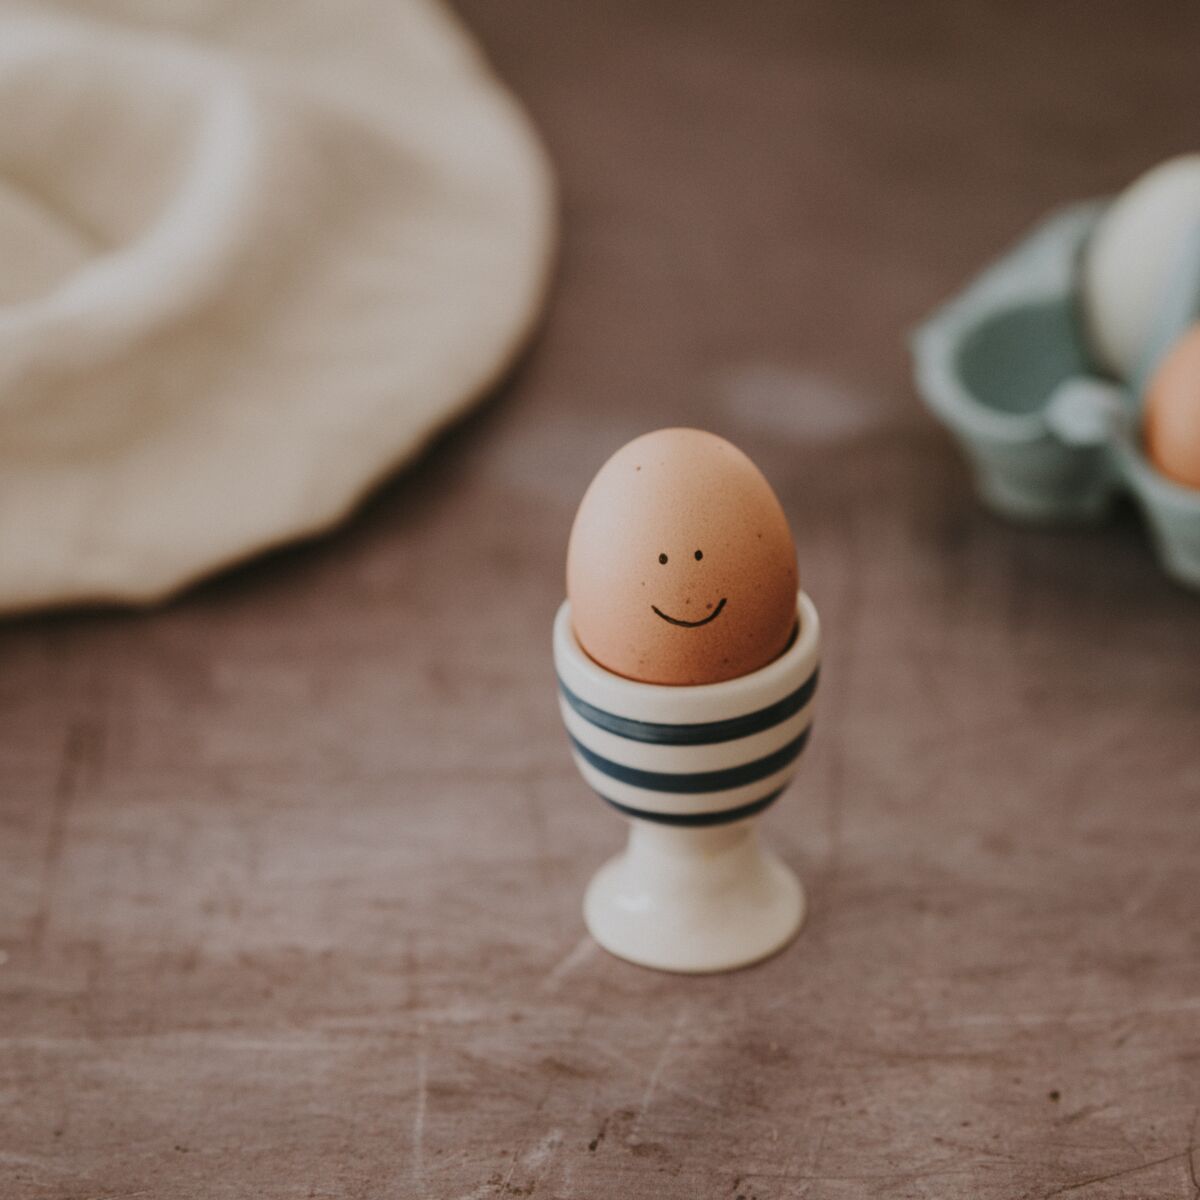 La technique étonnante pour faire cuire un œuf au plat : Femme